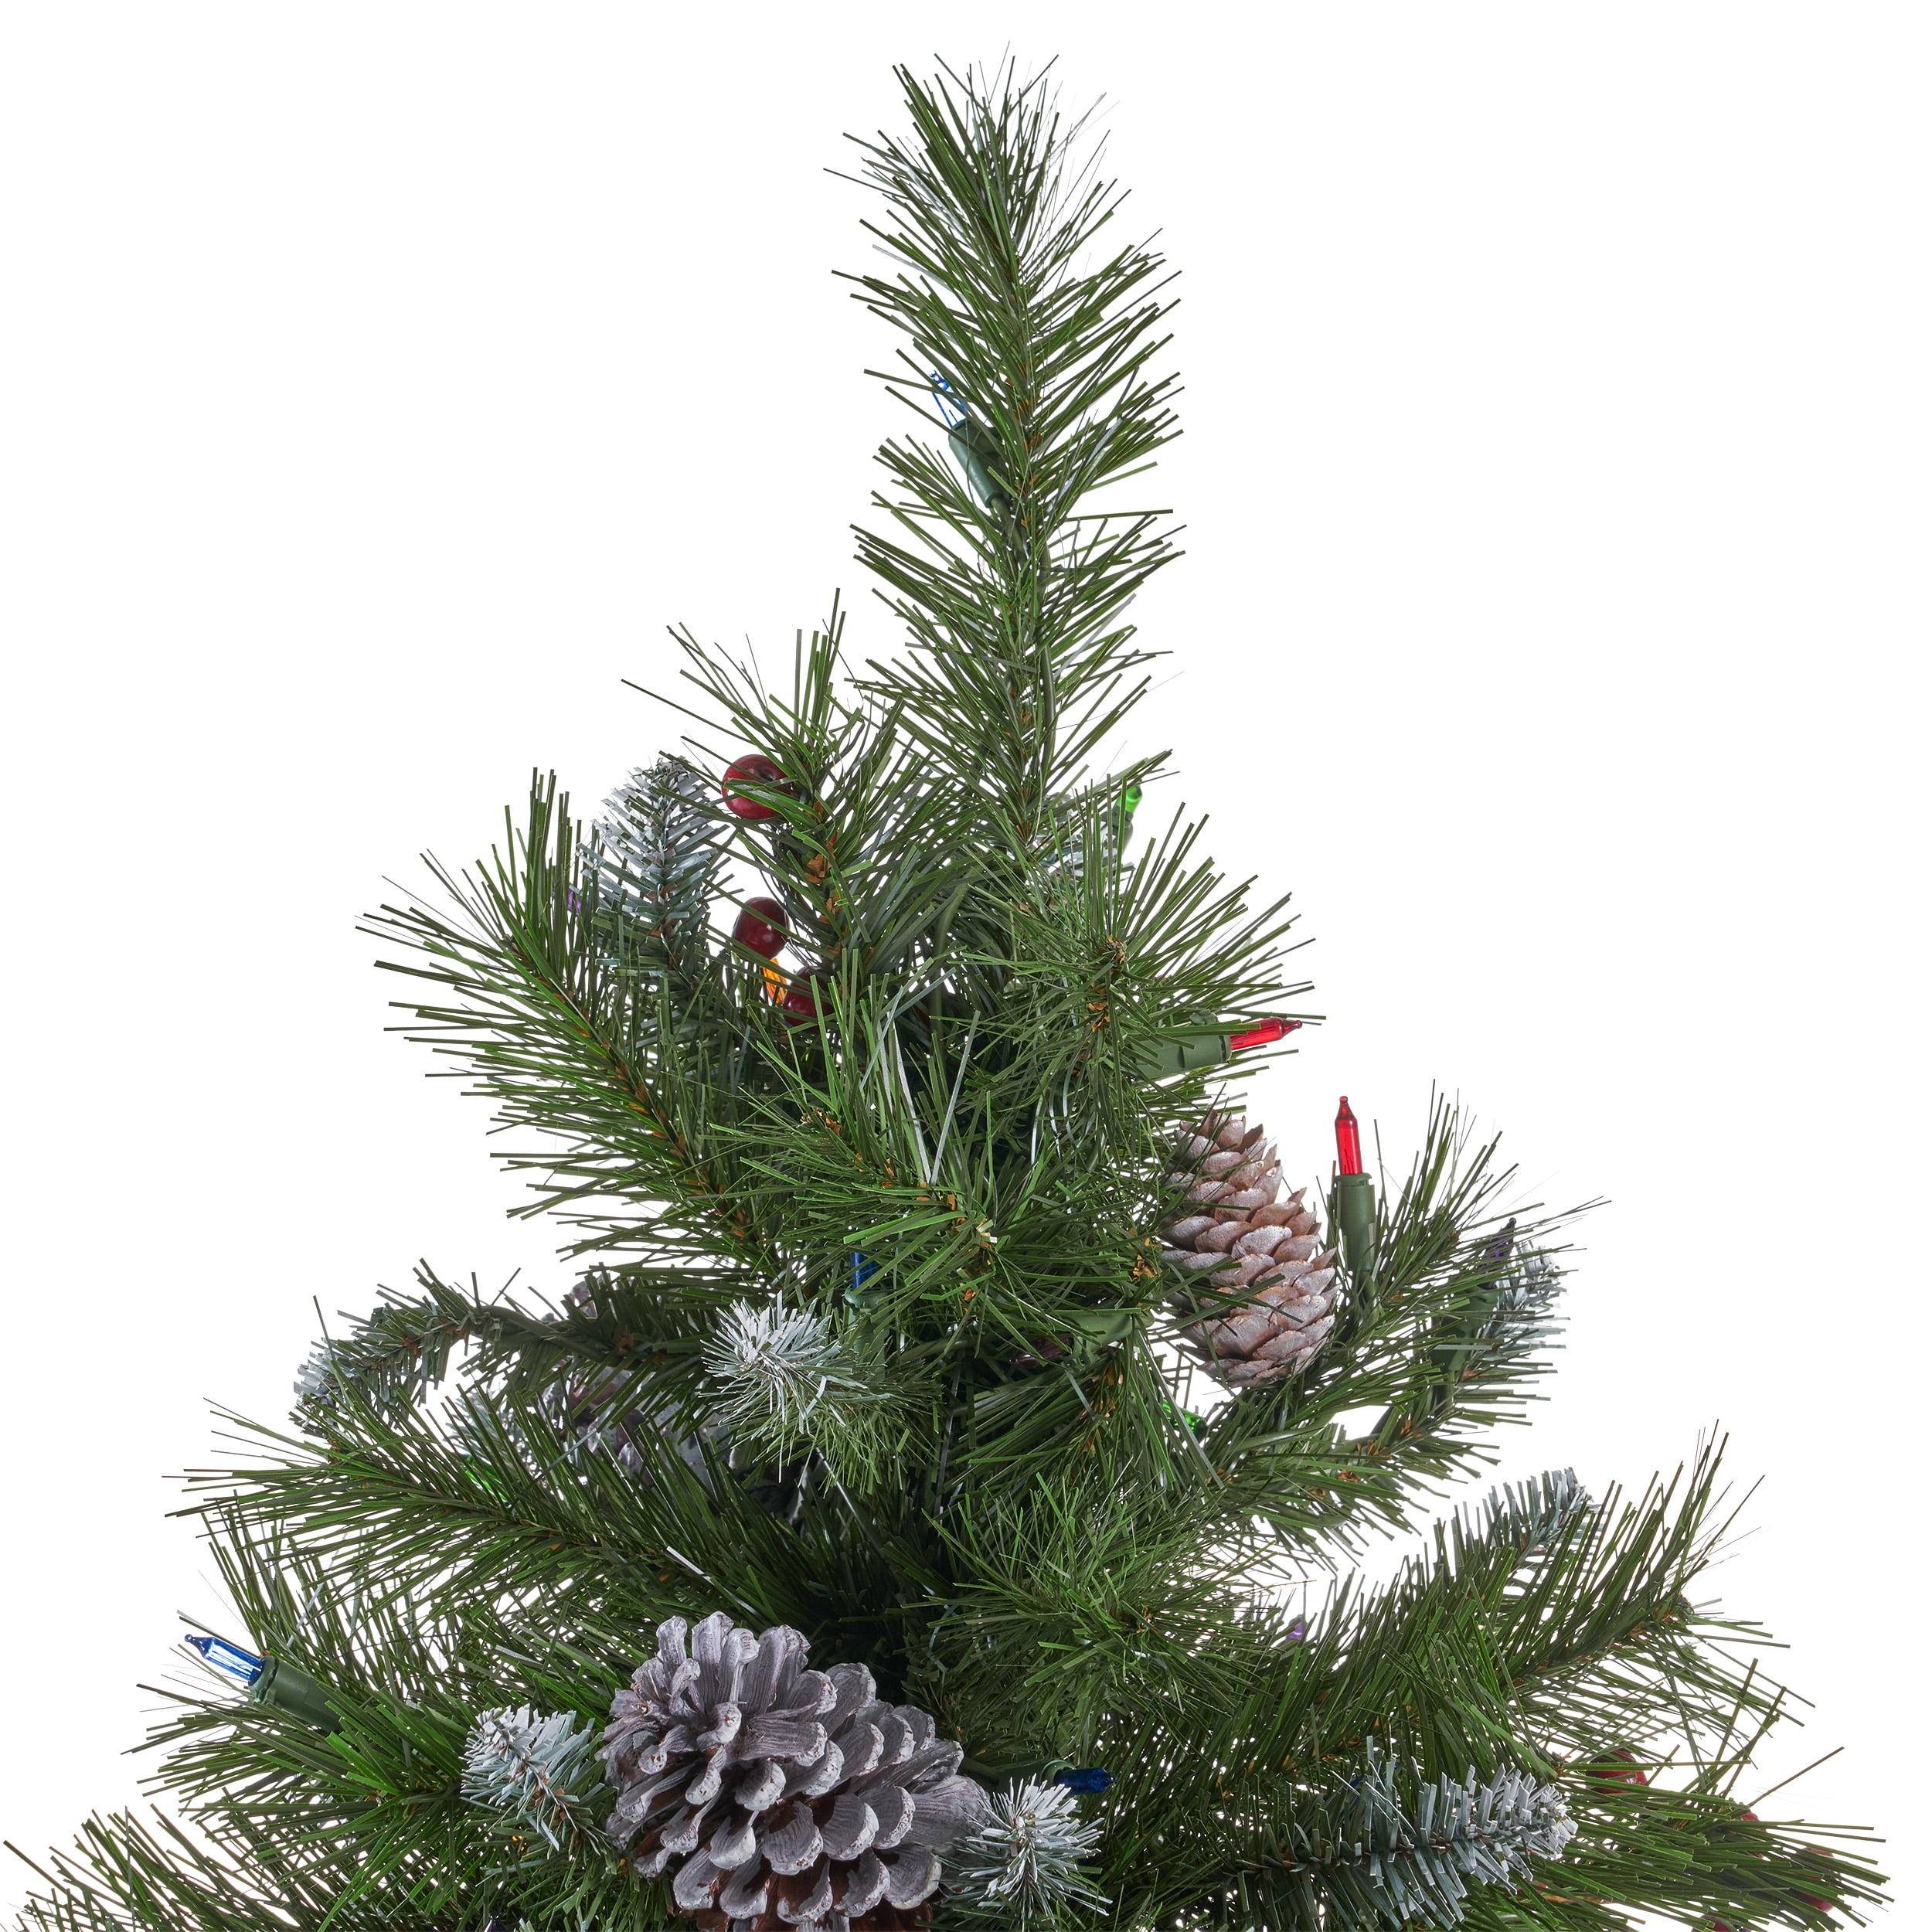 Frosted Noel Christmas Tree - 7.5'  Weißer weihnachtsbaum, Weihnachtsbaum  schmücken ideen, Tannenbaum schmücken